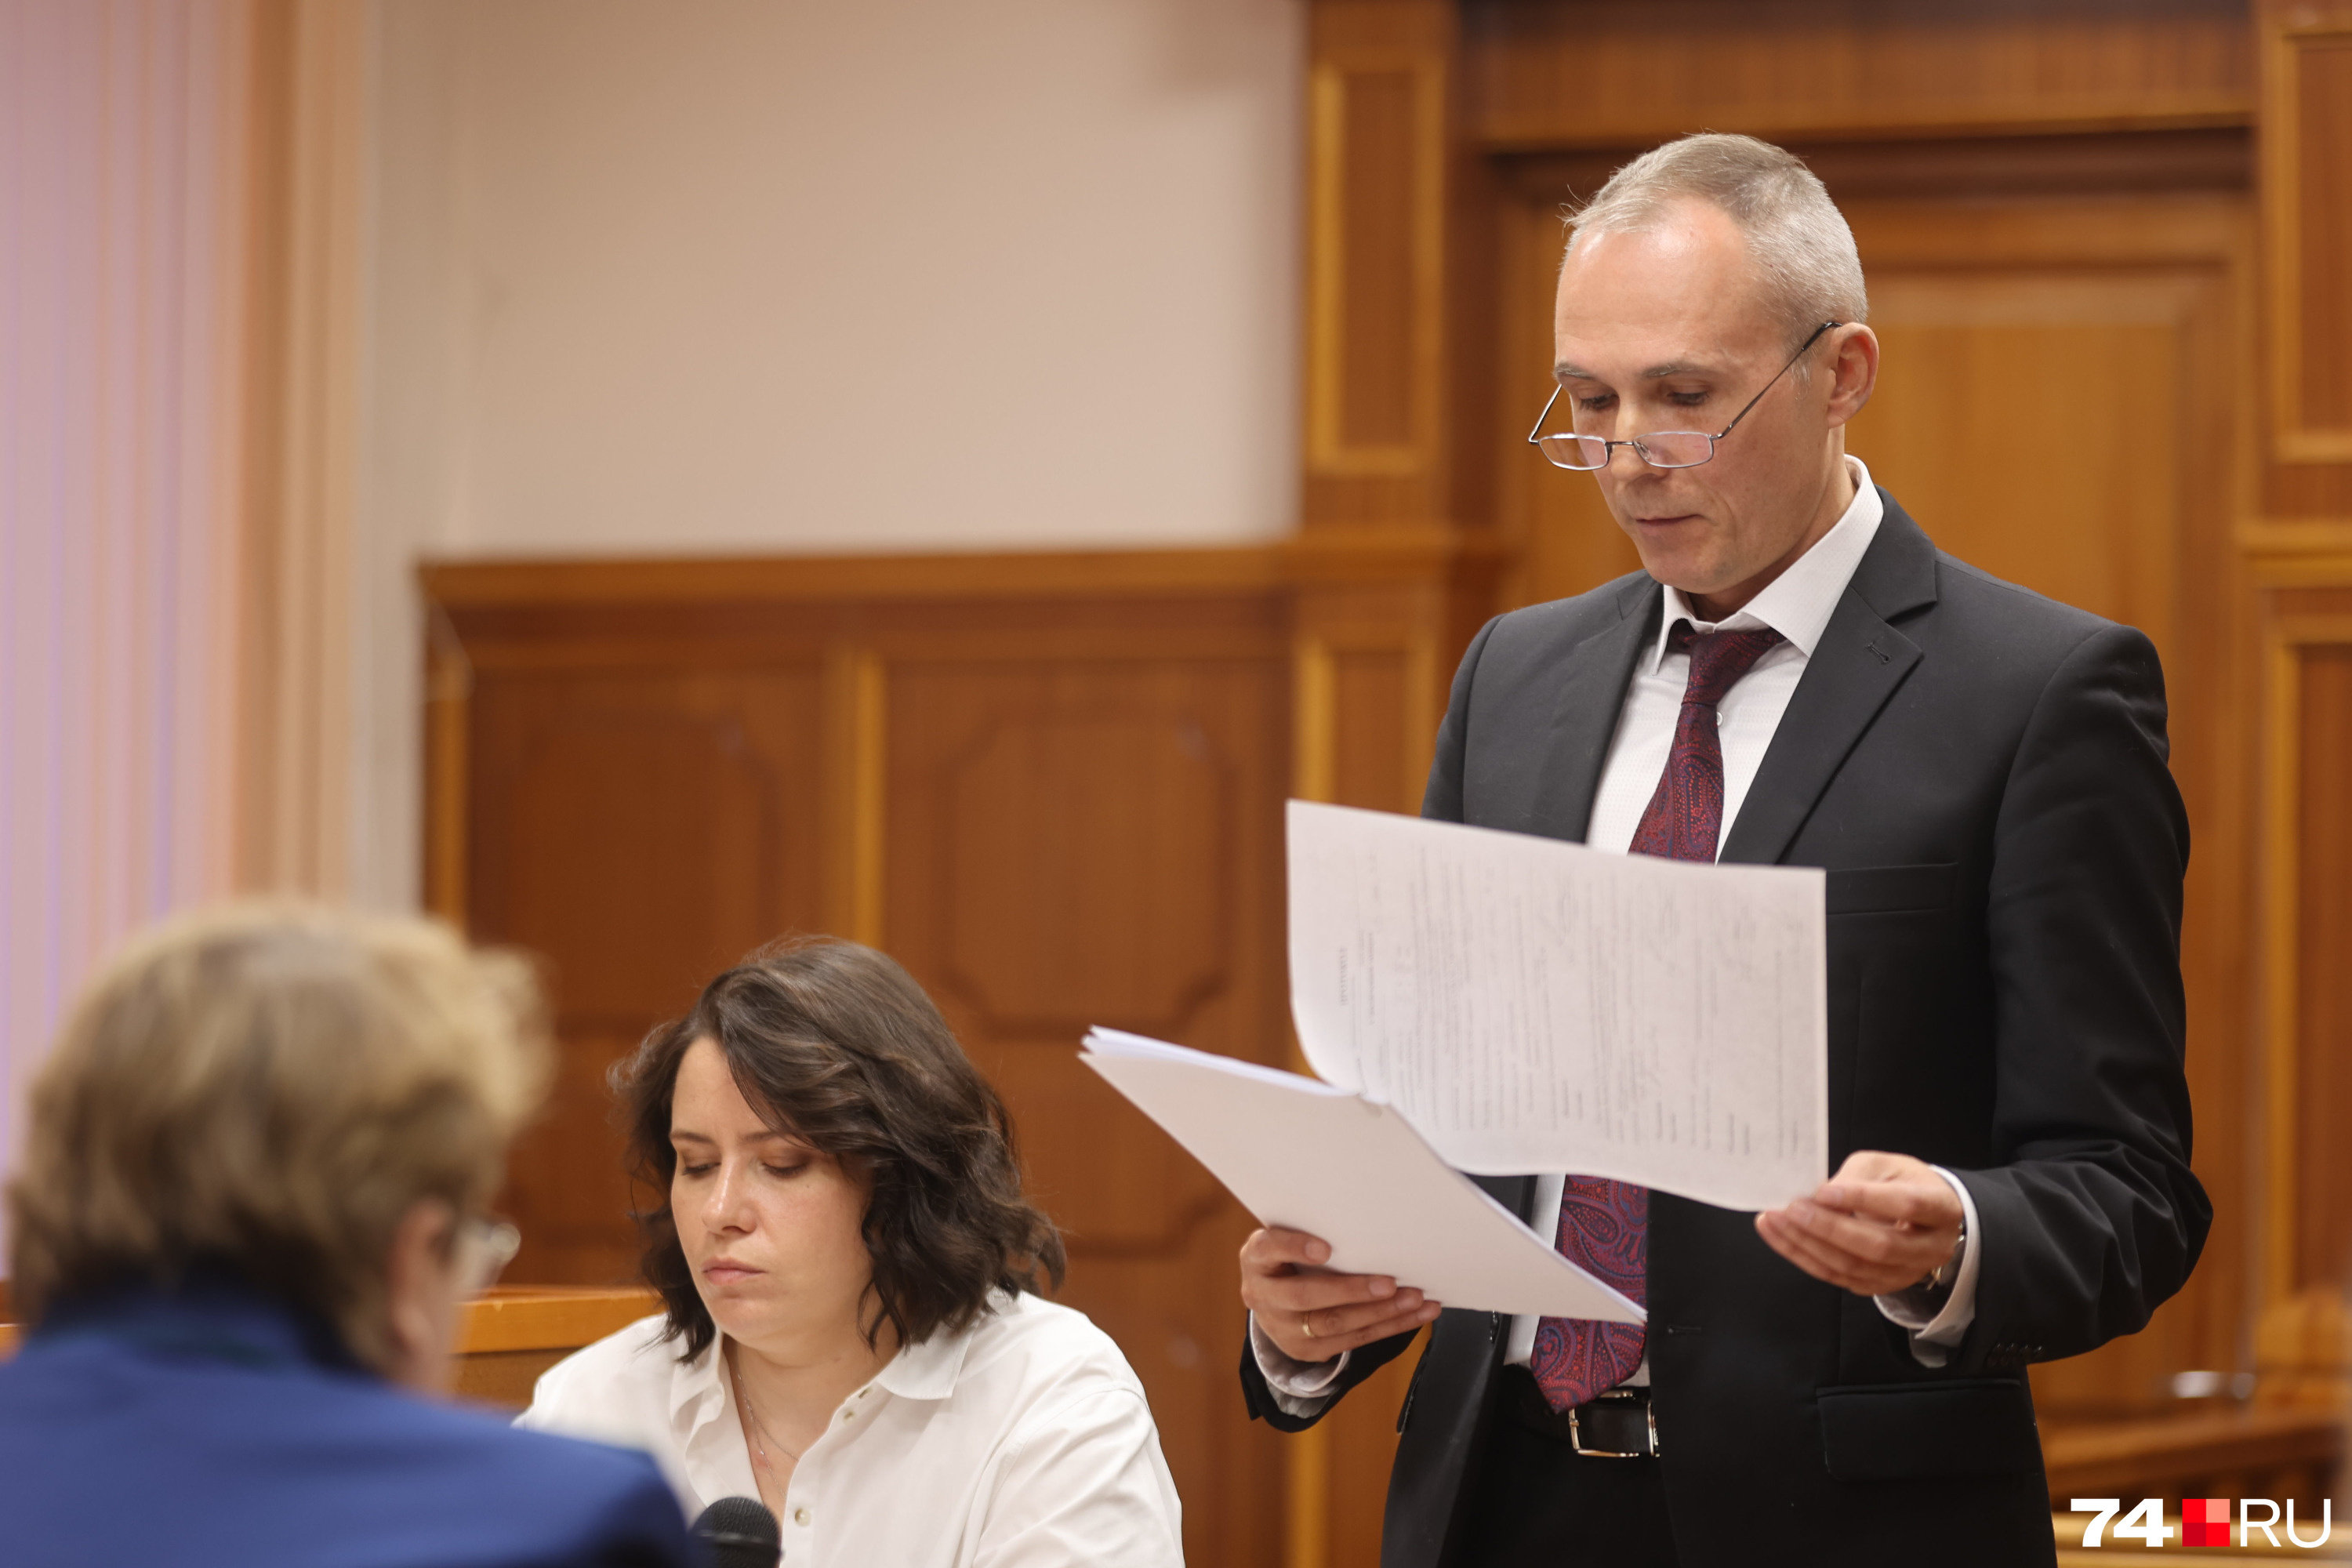 Адвокат Сергей Сазанаков представляет интересы обвиняемого